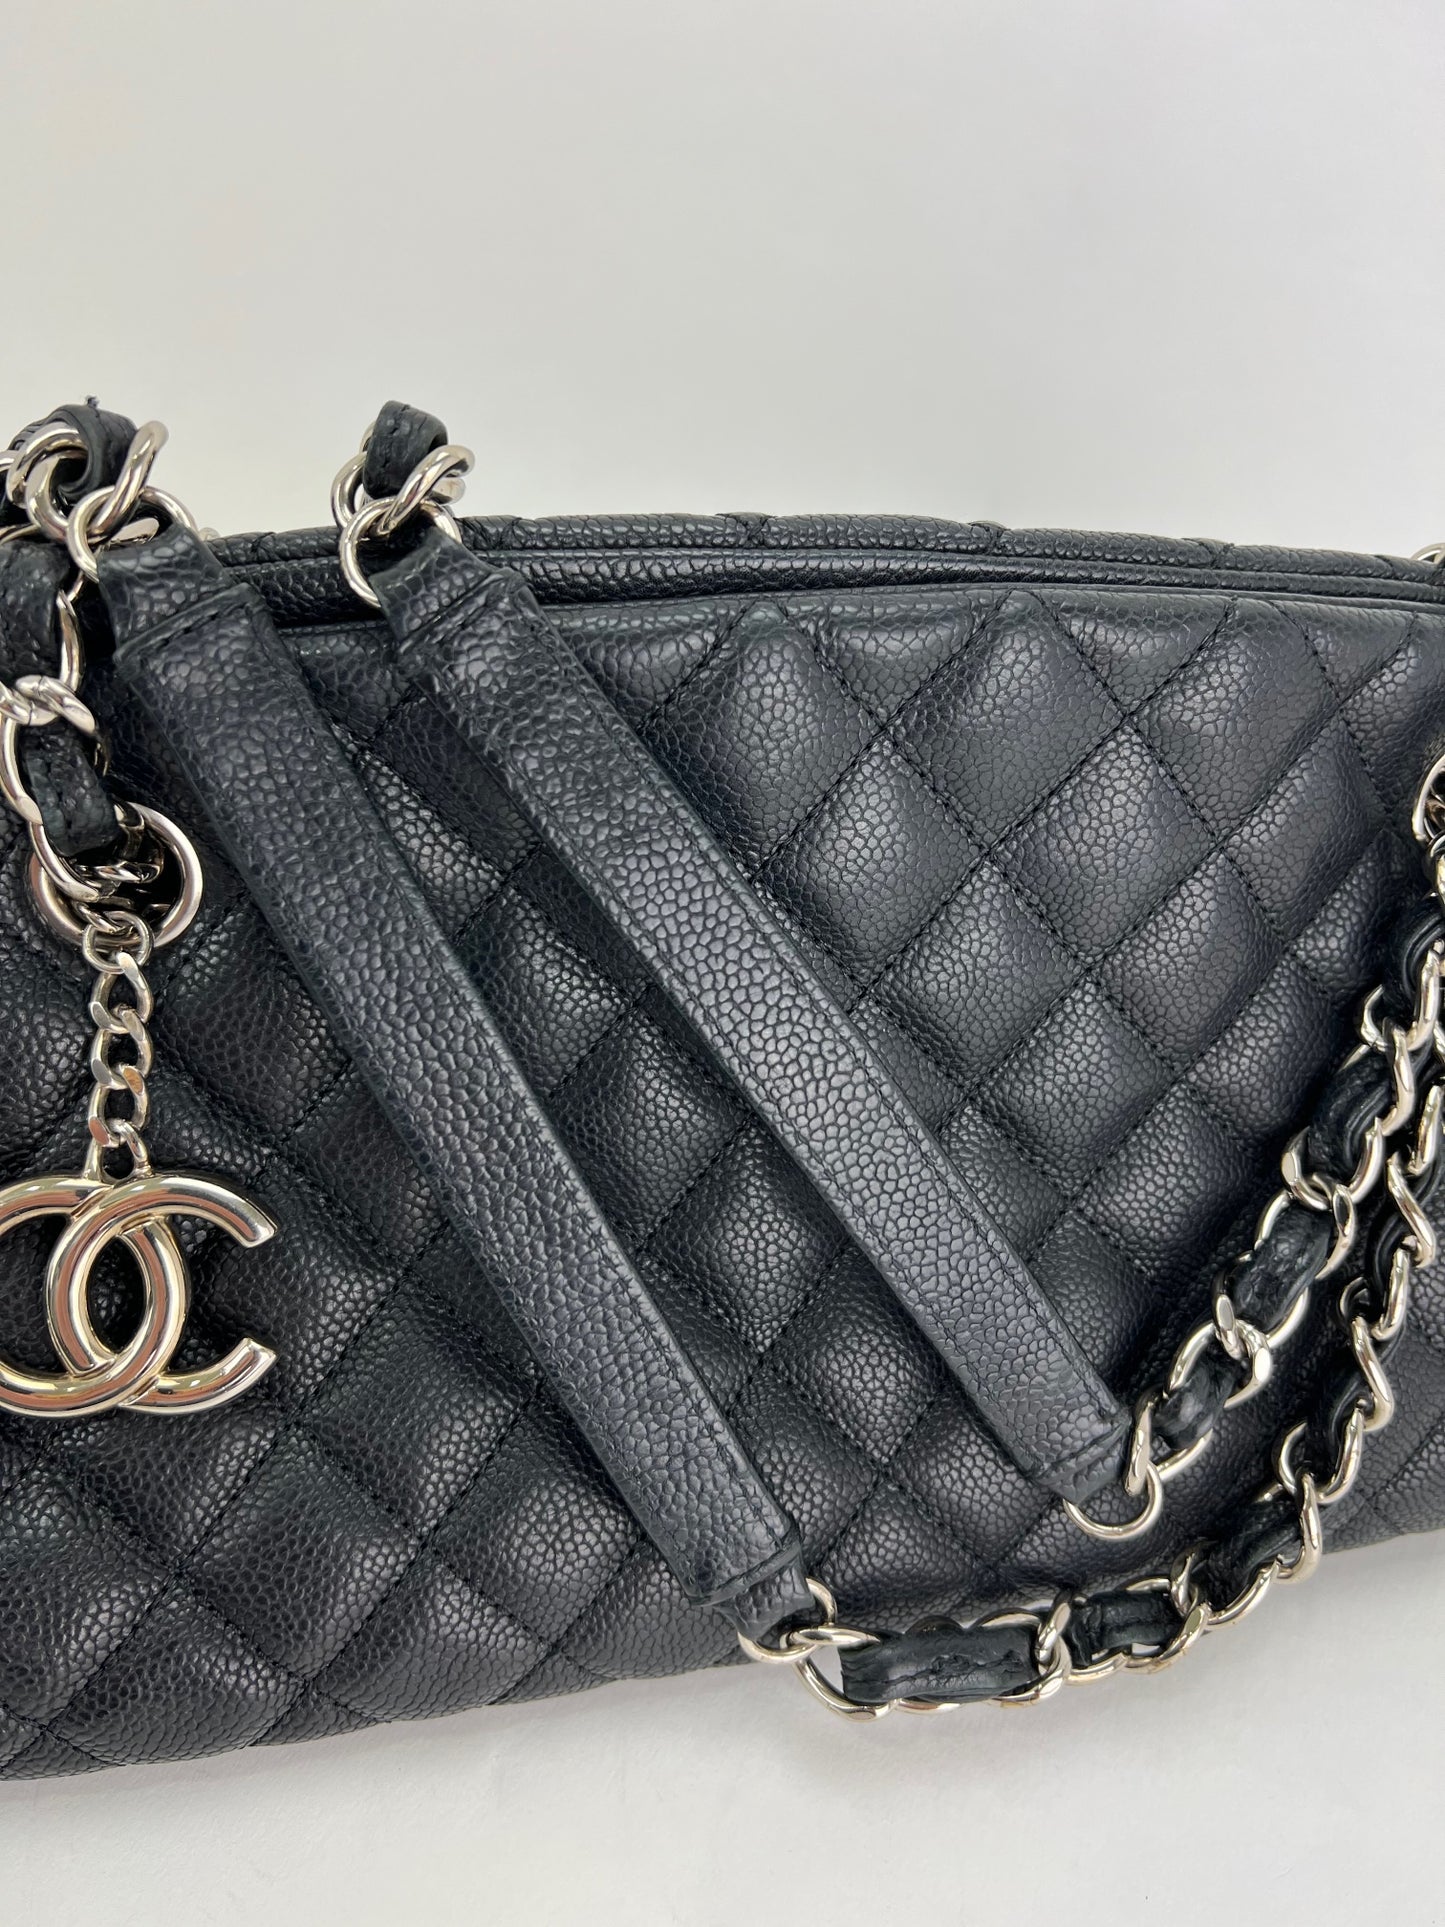 Chanel Pre-owned 1992 Mademoiselle Quilt Shoulder Bag